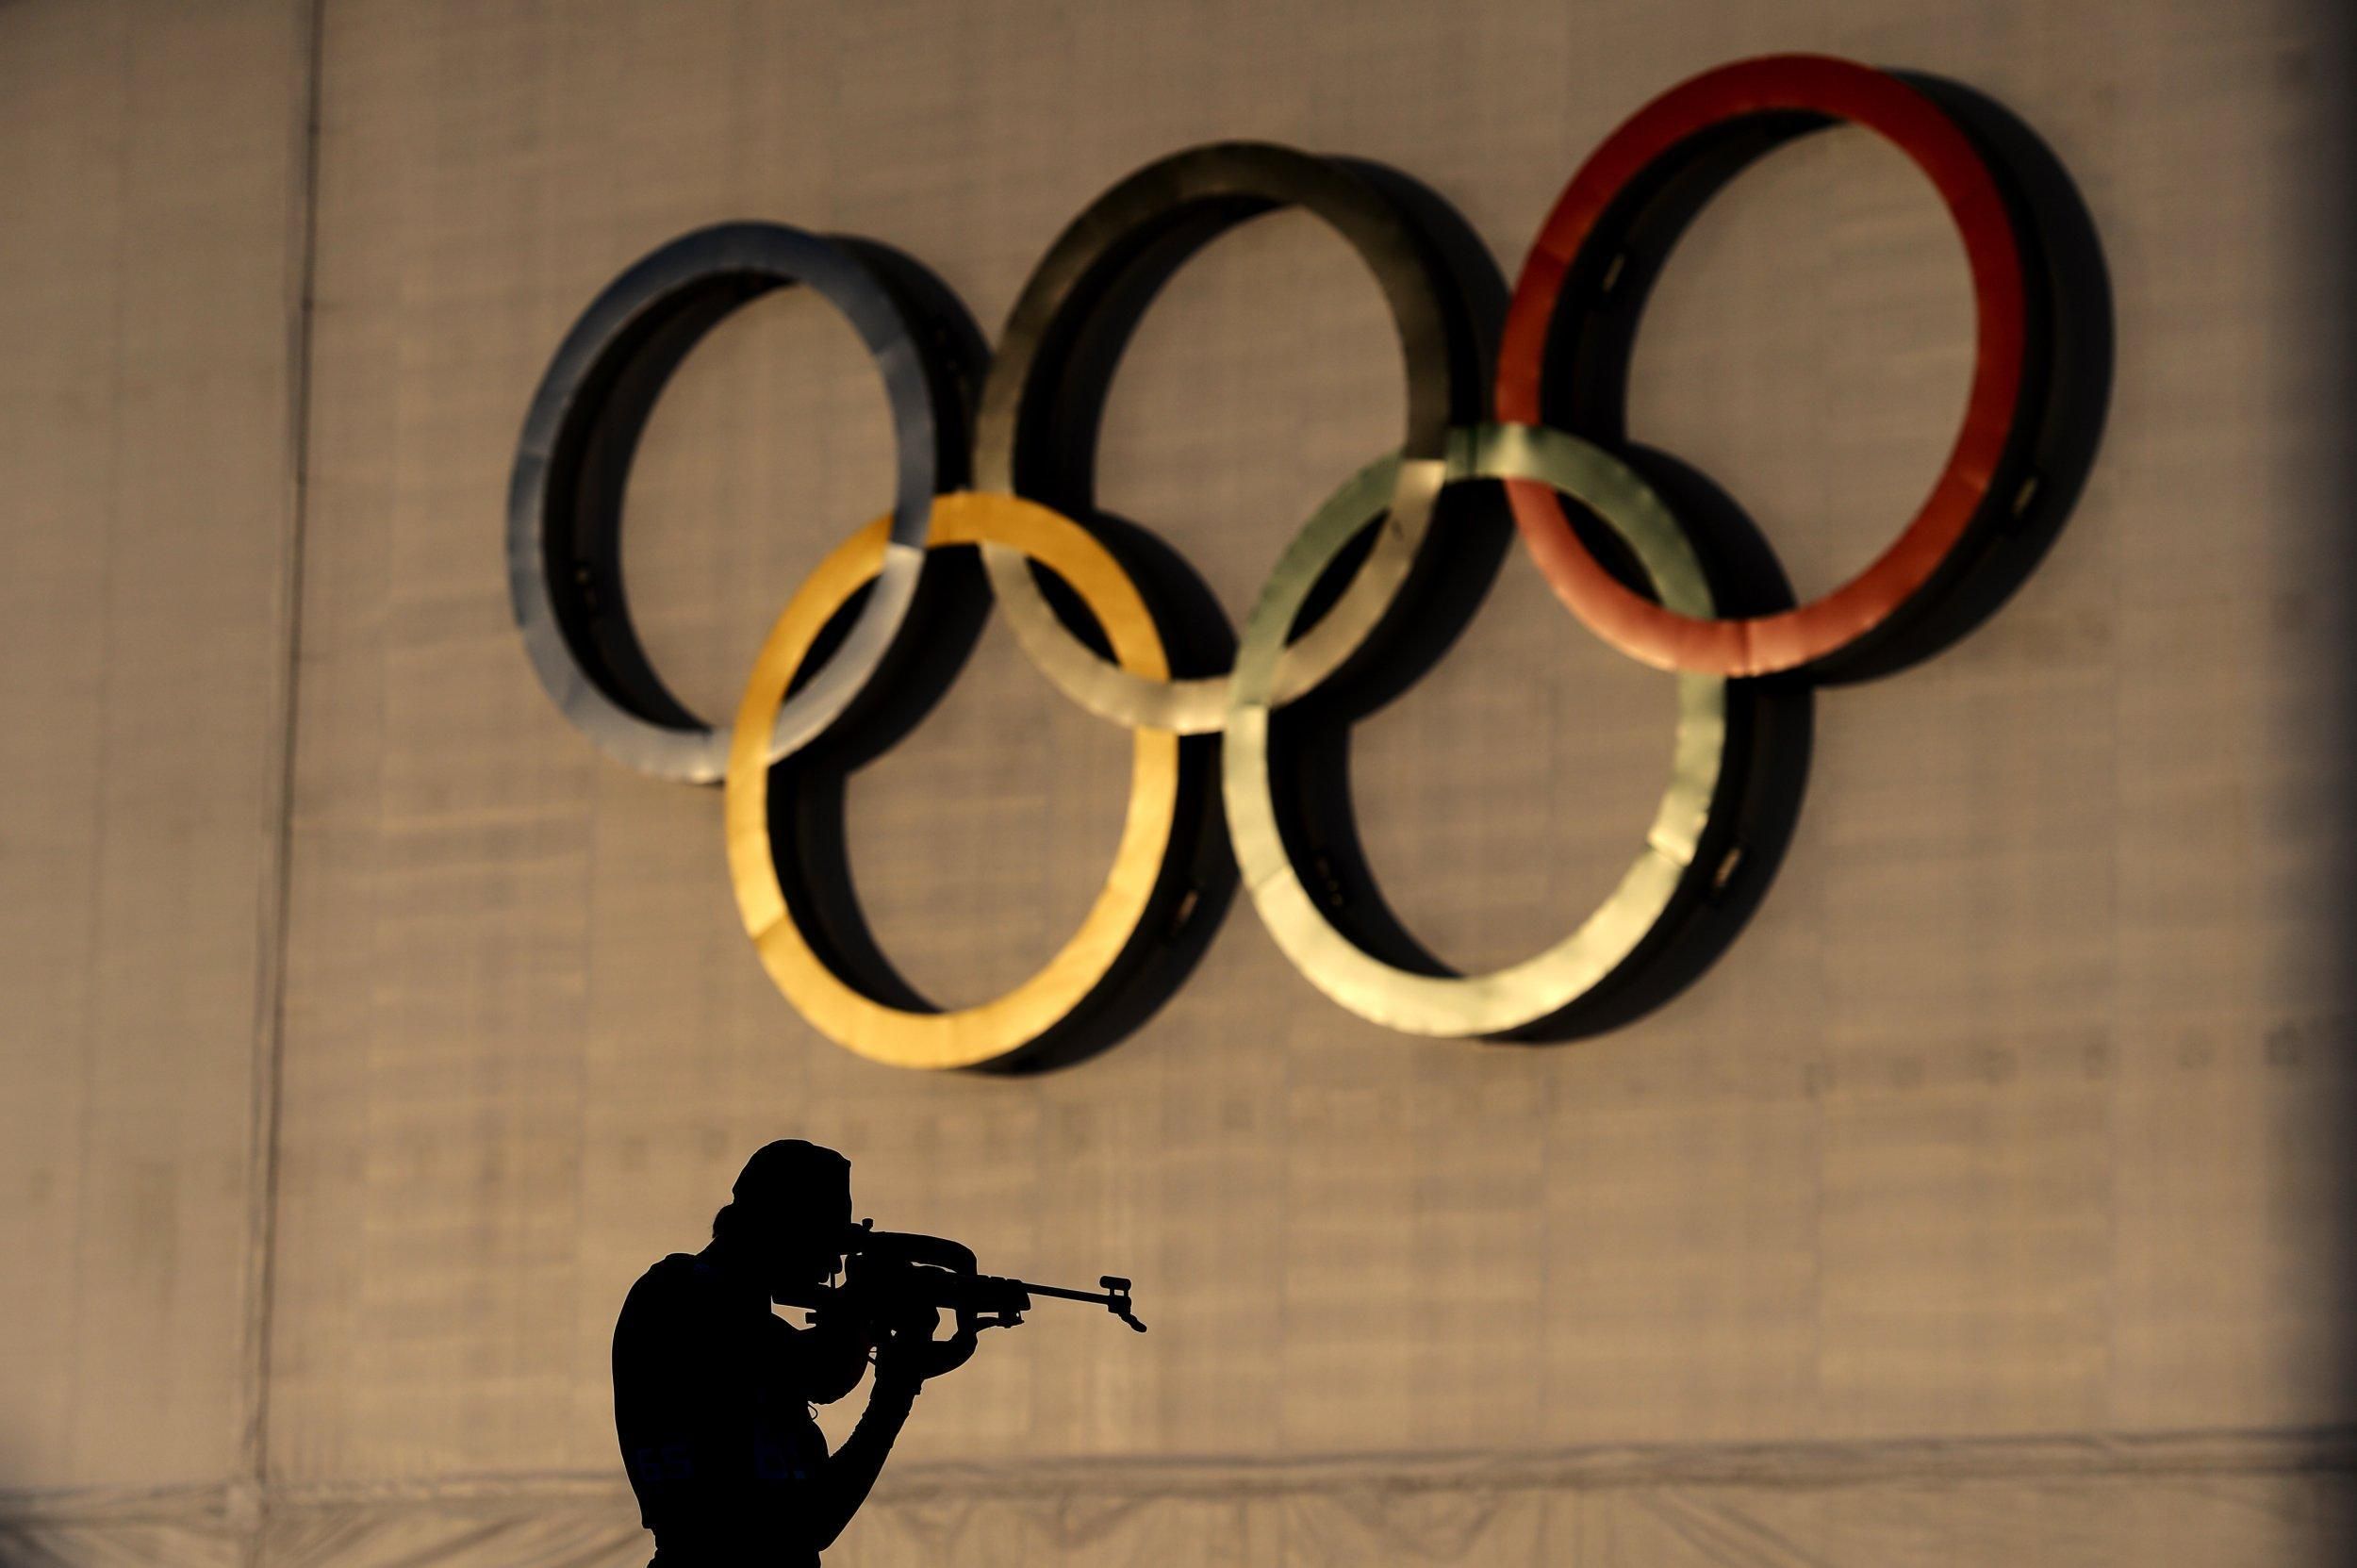 Бринзак виділив гонку, де українські біатлоністи можуть взяти медаль Олімпіади - Спорт 24